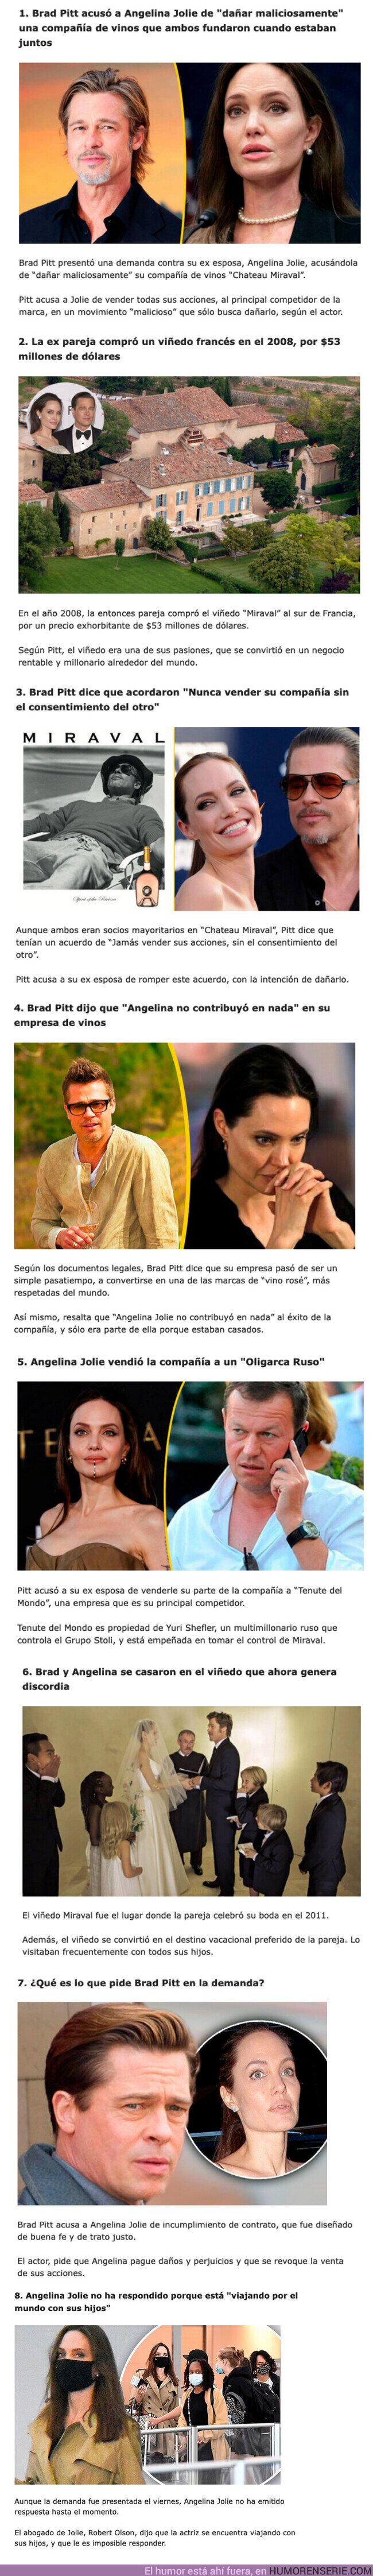 101269 - GALERÍA: 8 Puntos para entender el nuevo juicio entre Angelina Jolie y Brad Pitt